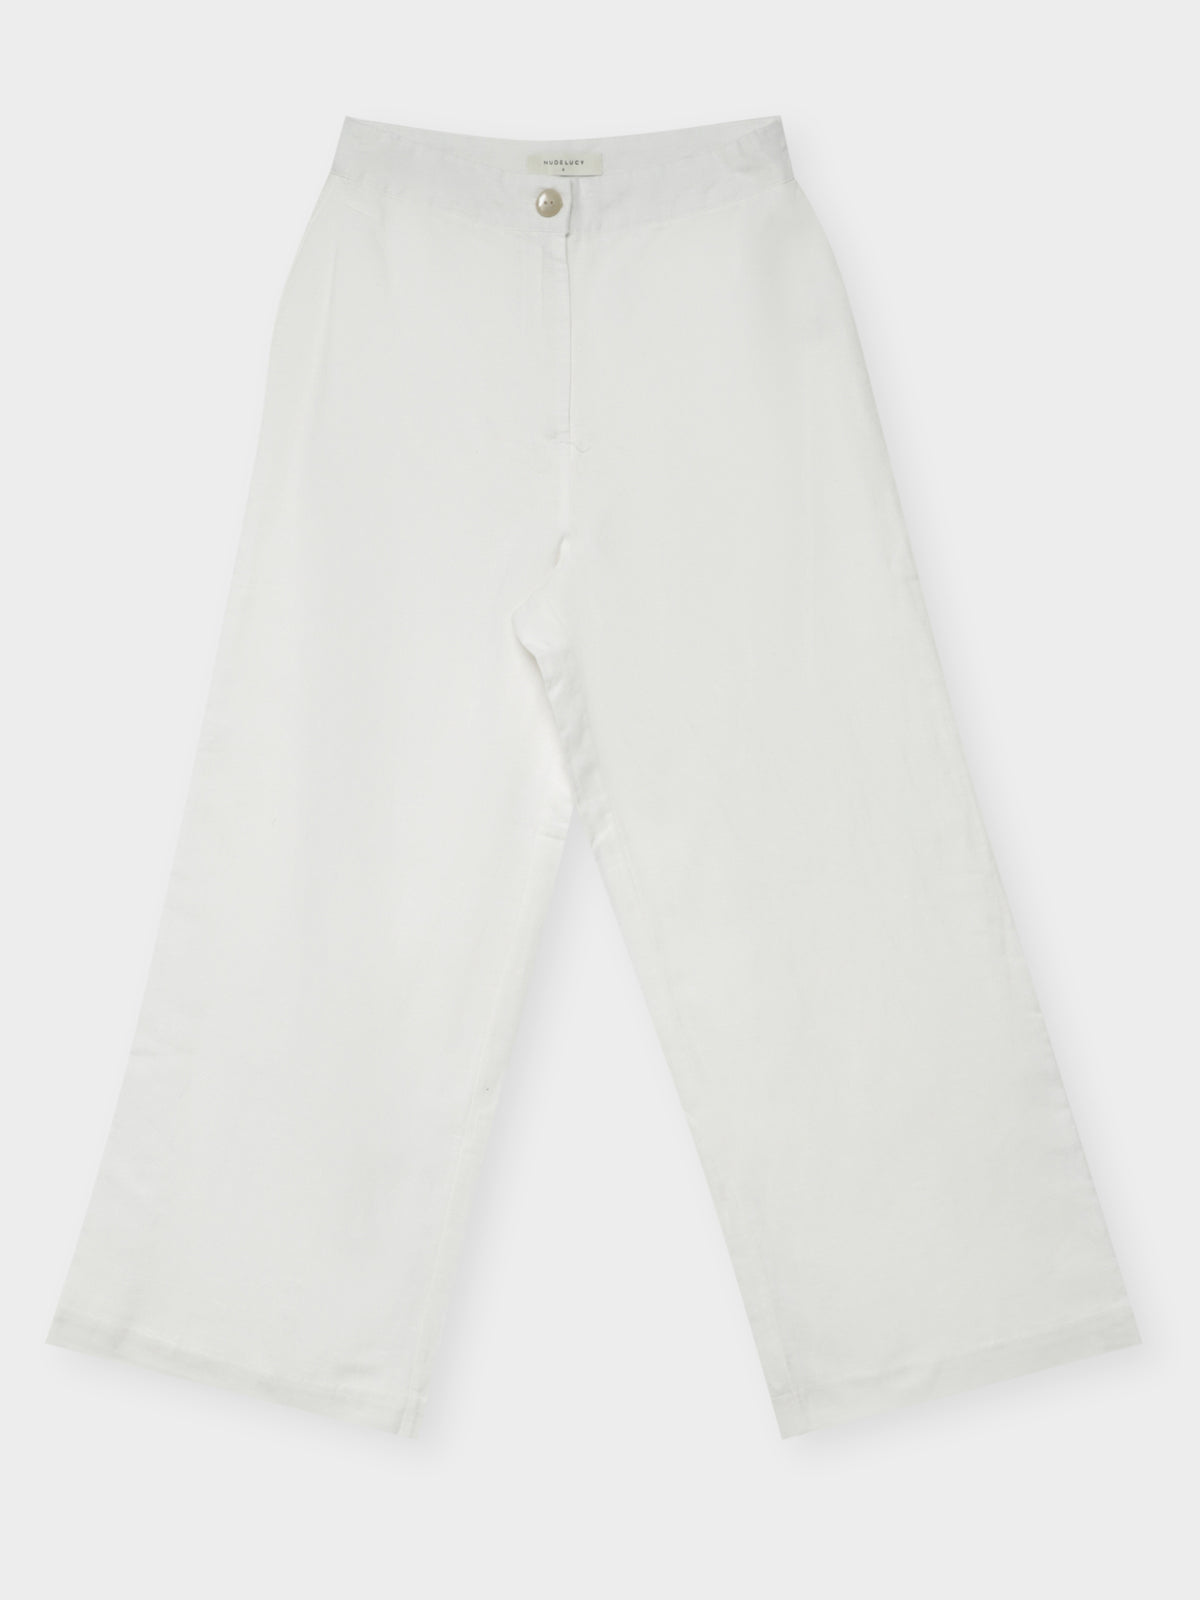 Drew Pants in White